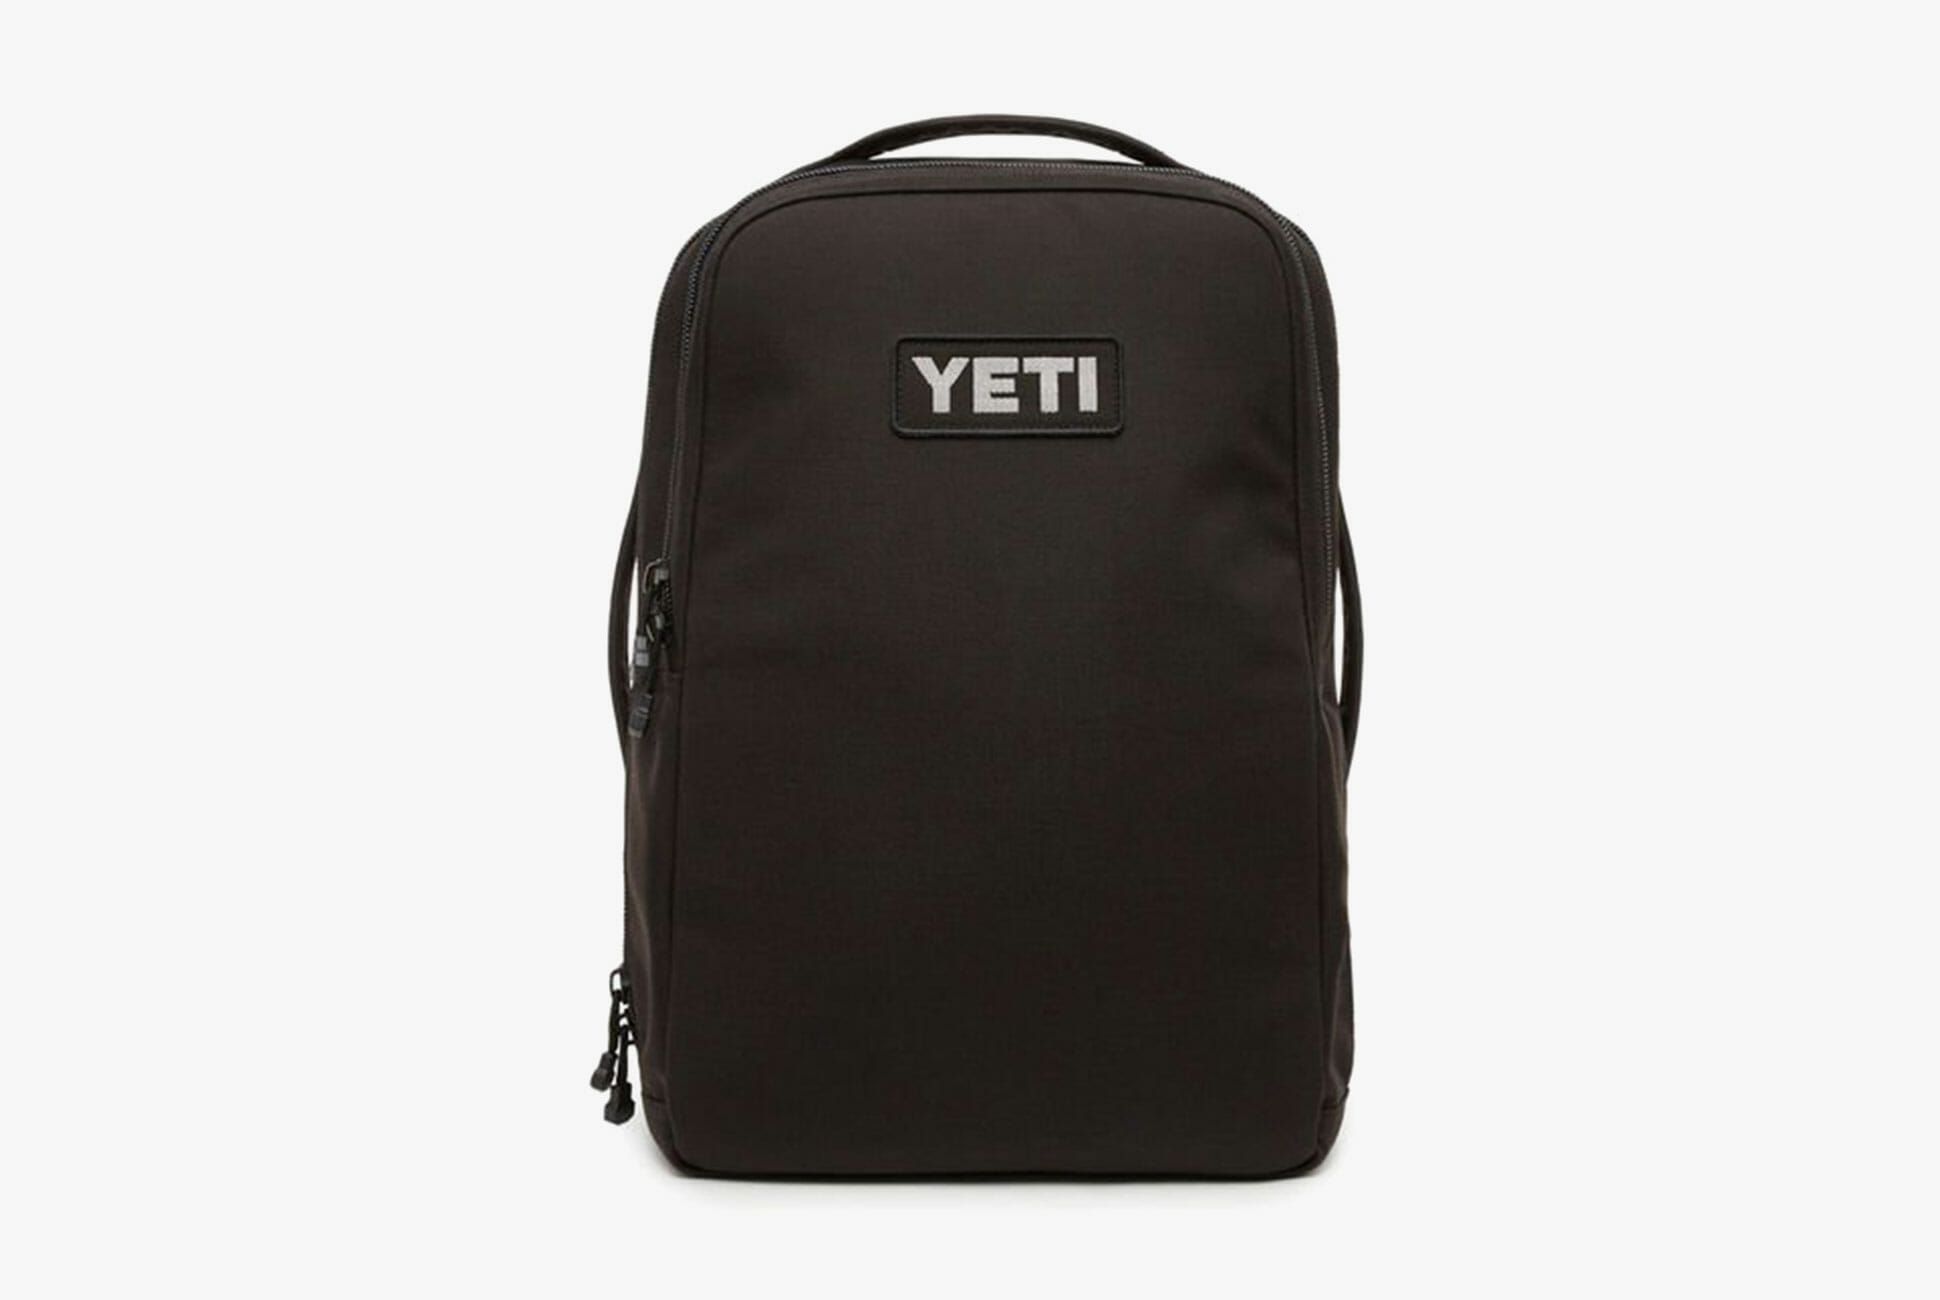 YETI Tocayo 26 Backpack, Black–